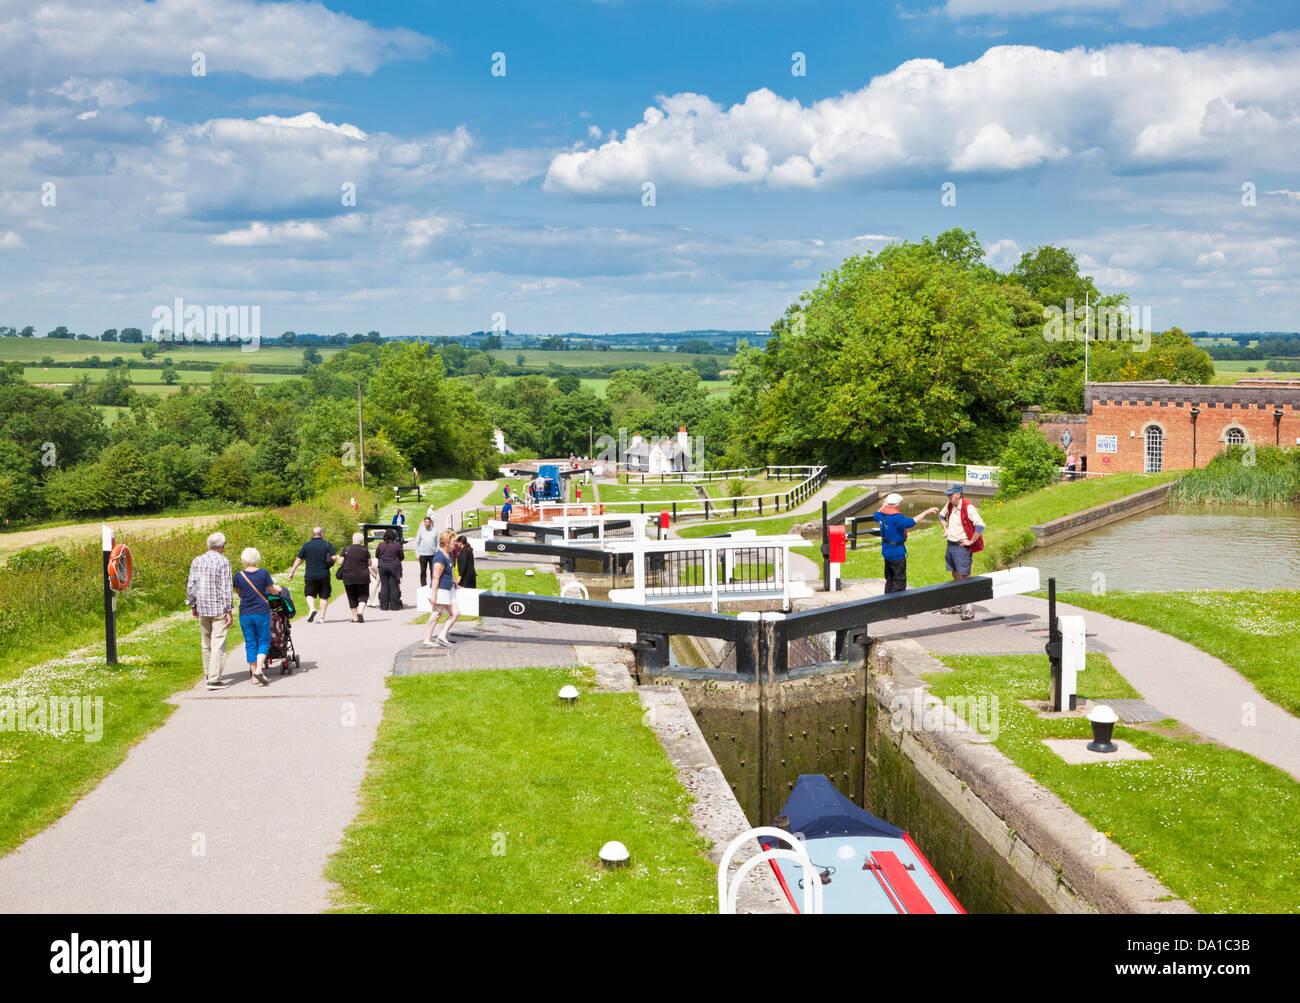 Vol historique de verrous à Foxton locks sur le Grand Union canal Leicestershire Angleterre UK GB EU Europe Banque D'Images